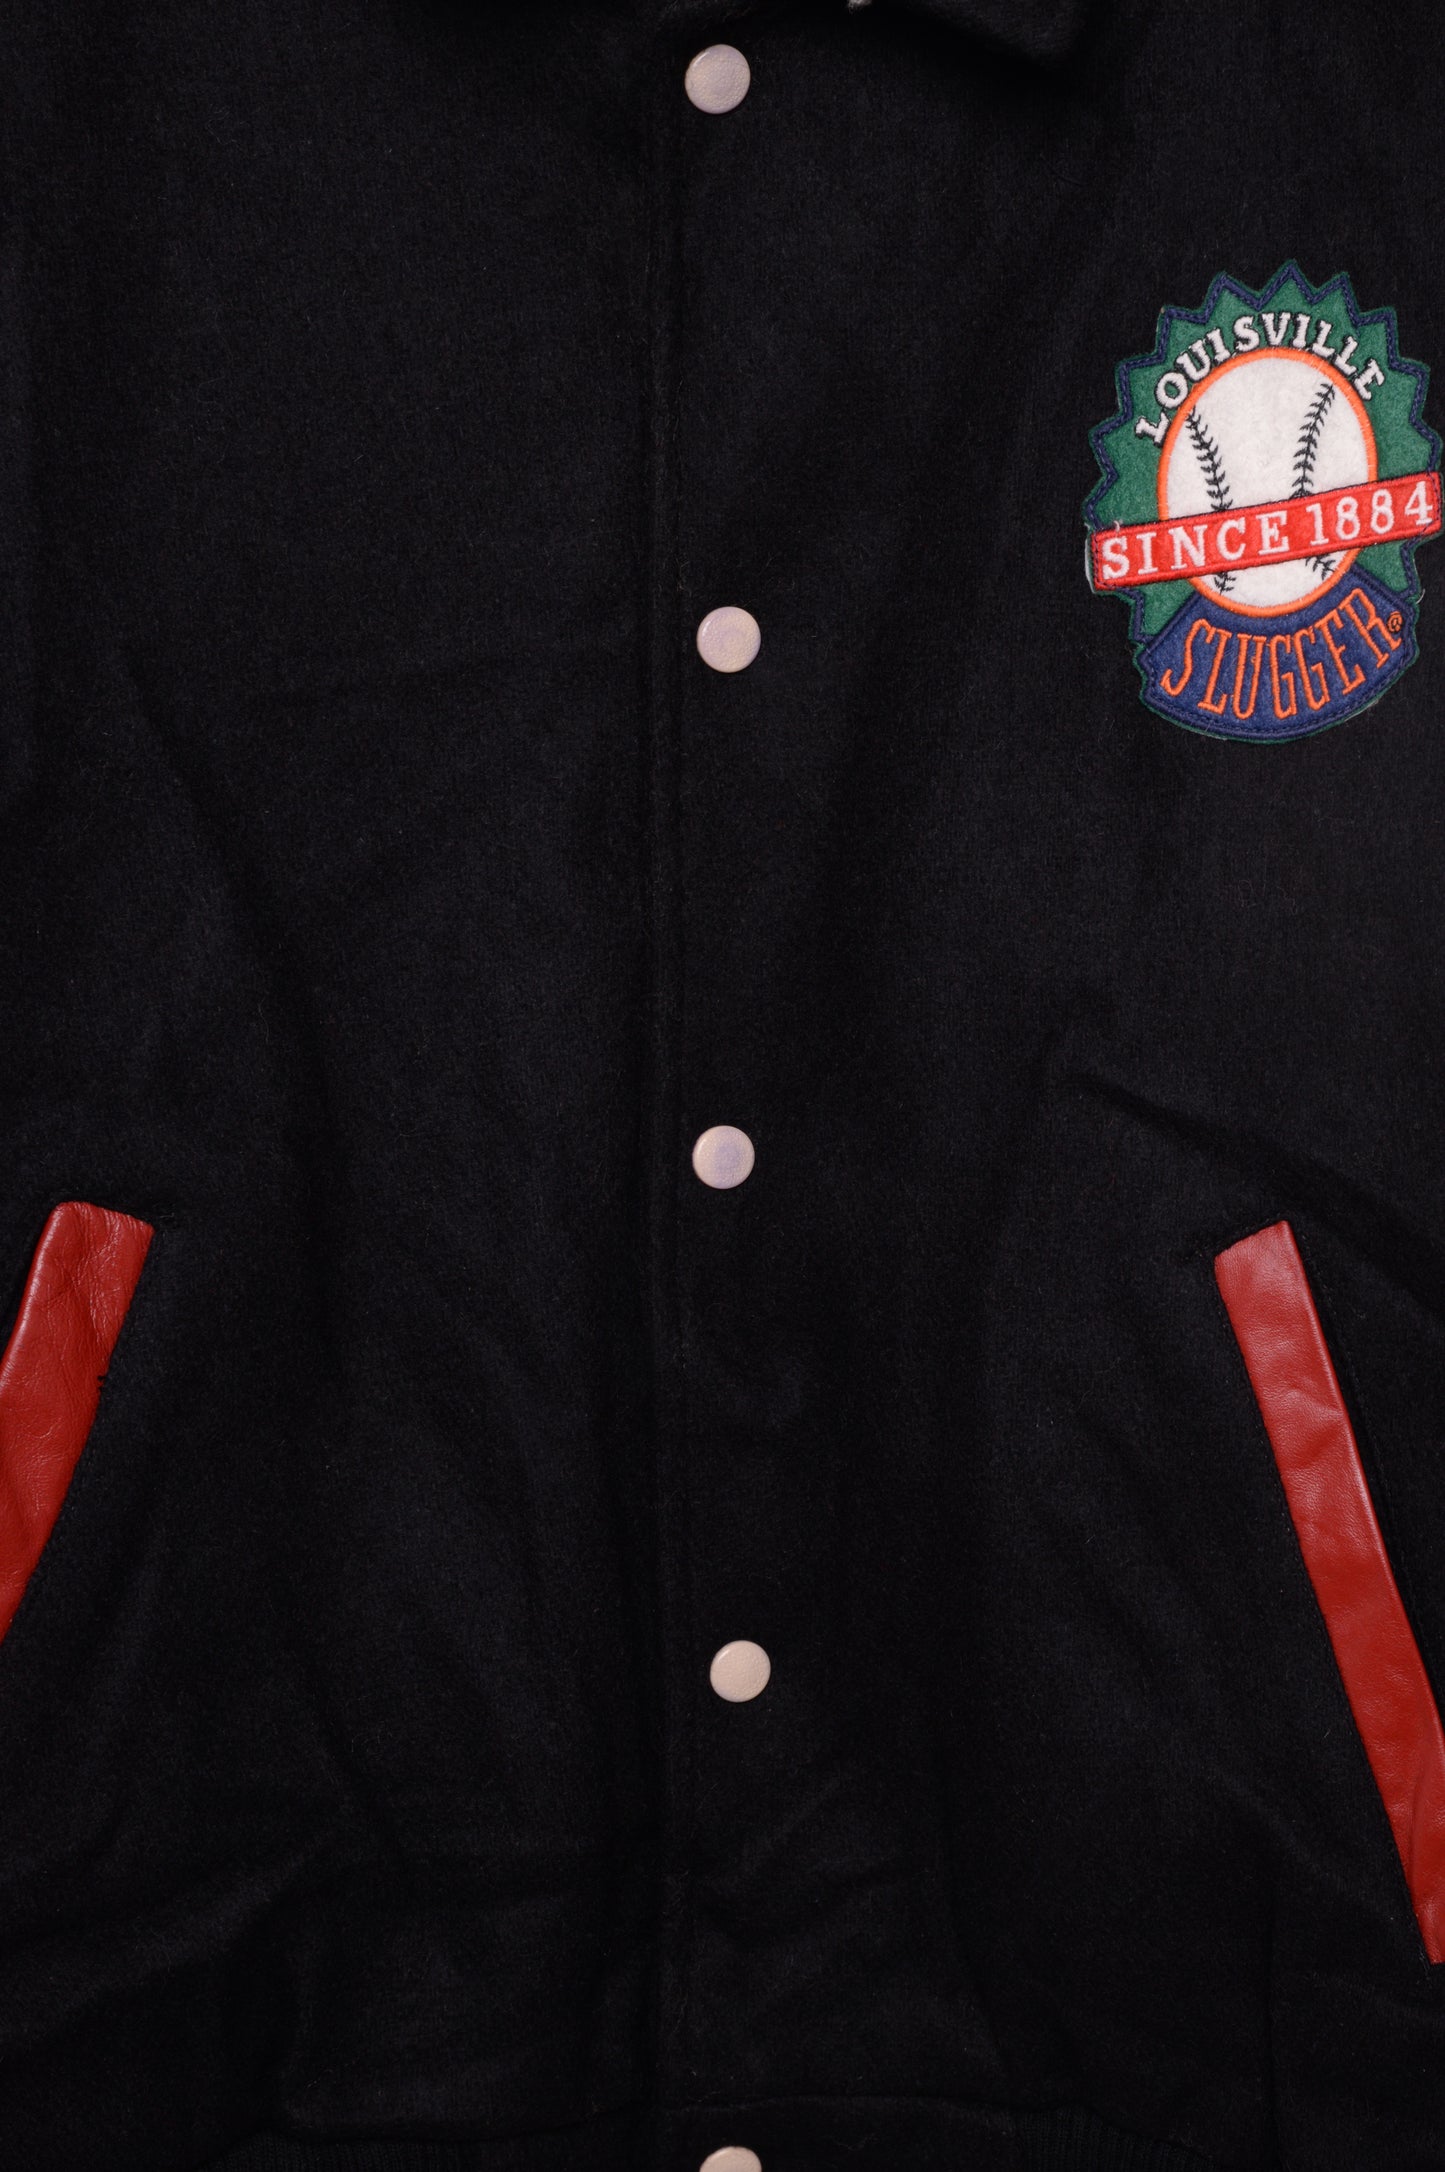 Unisex Vintage Louisville Slugger Letterman Jacket - The Vintage Twin